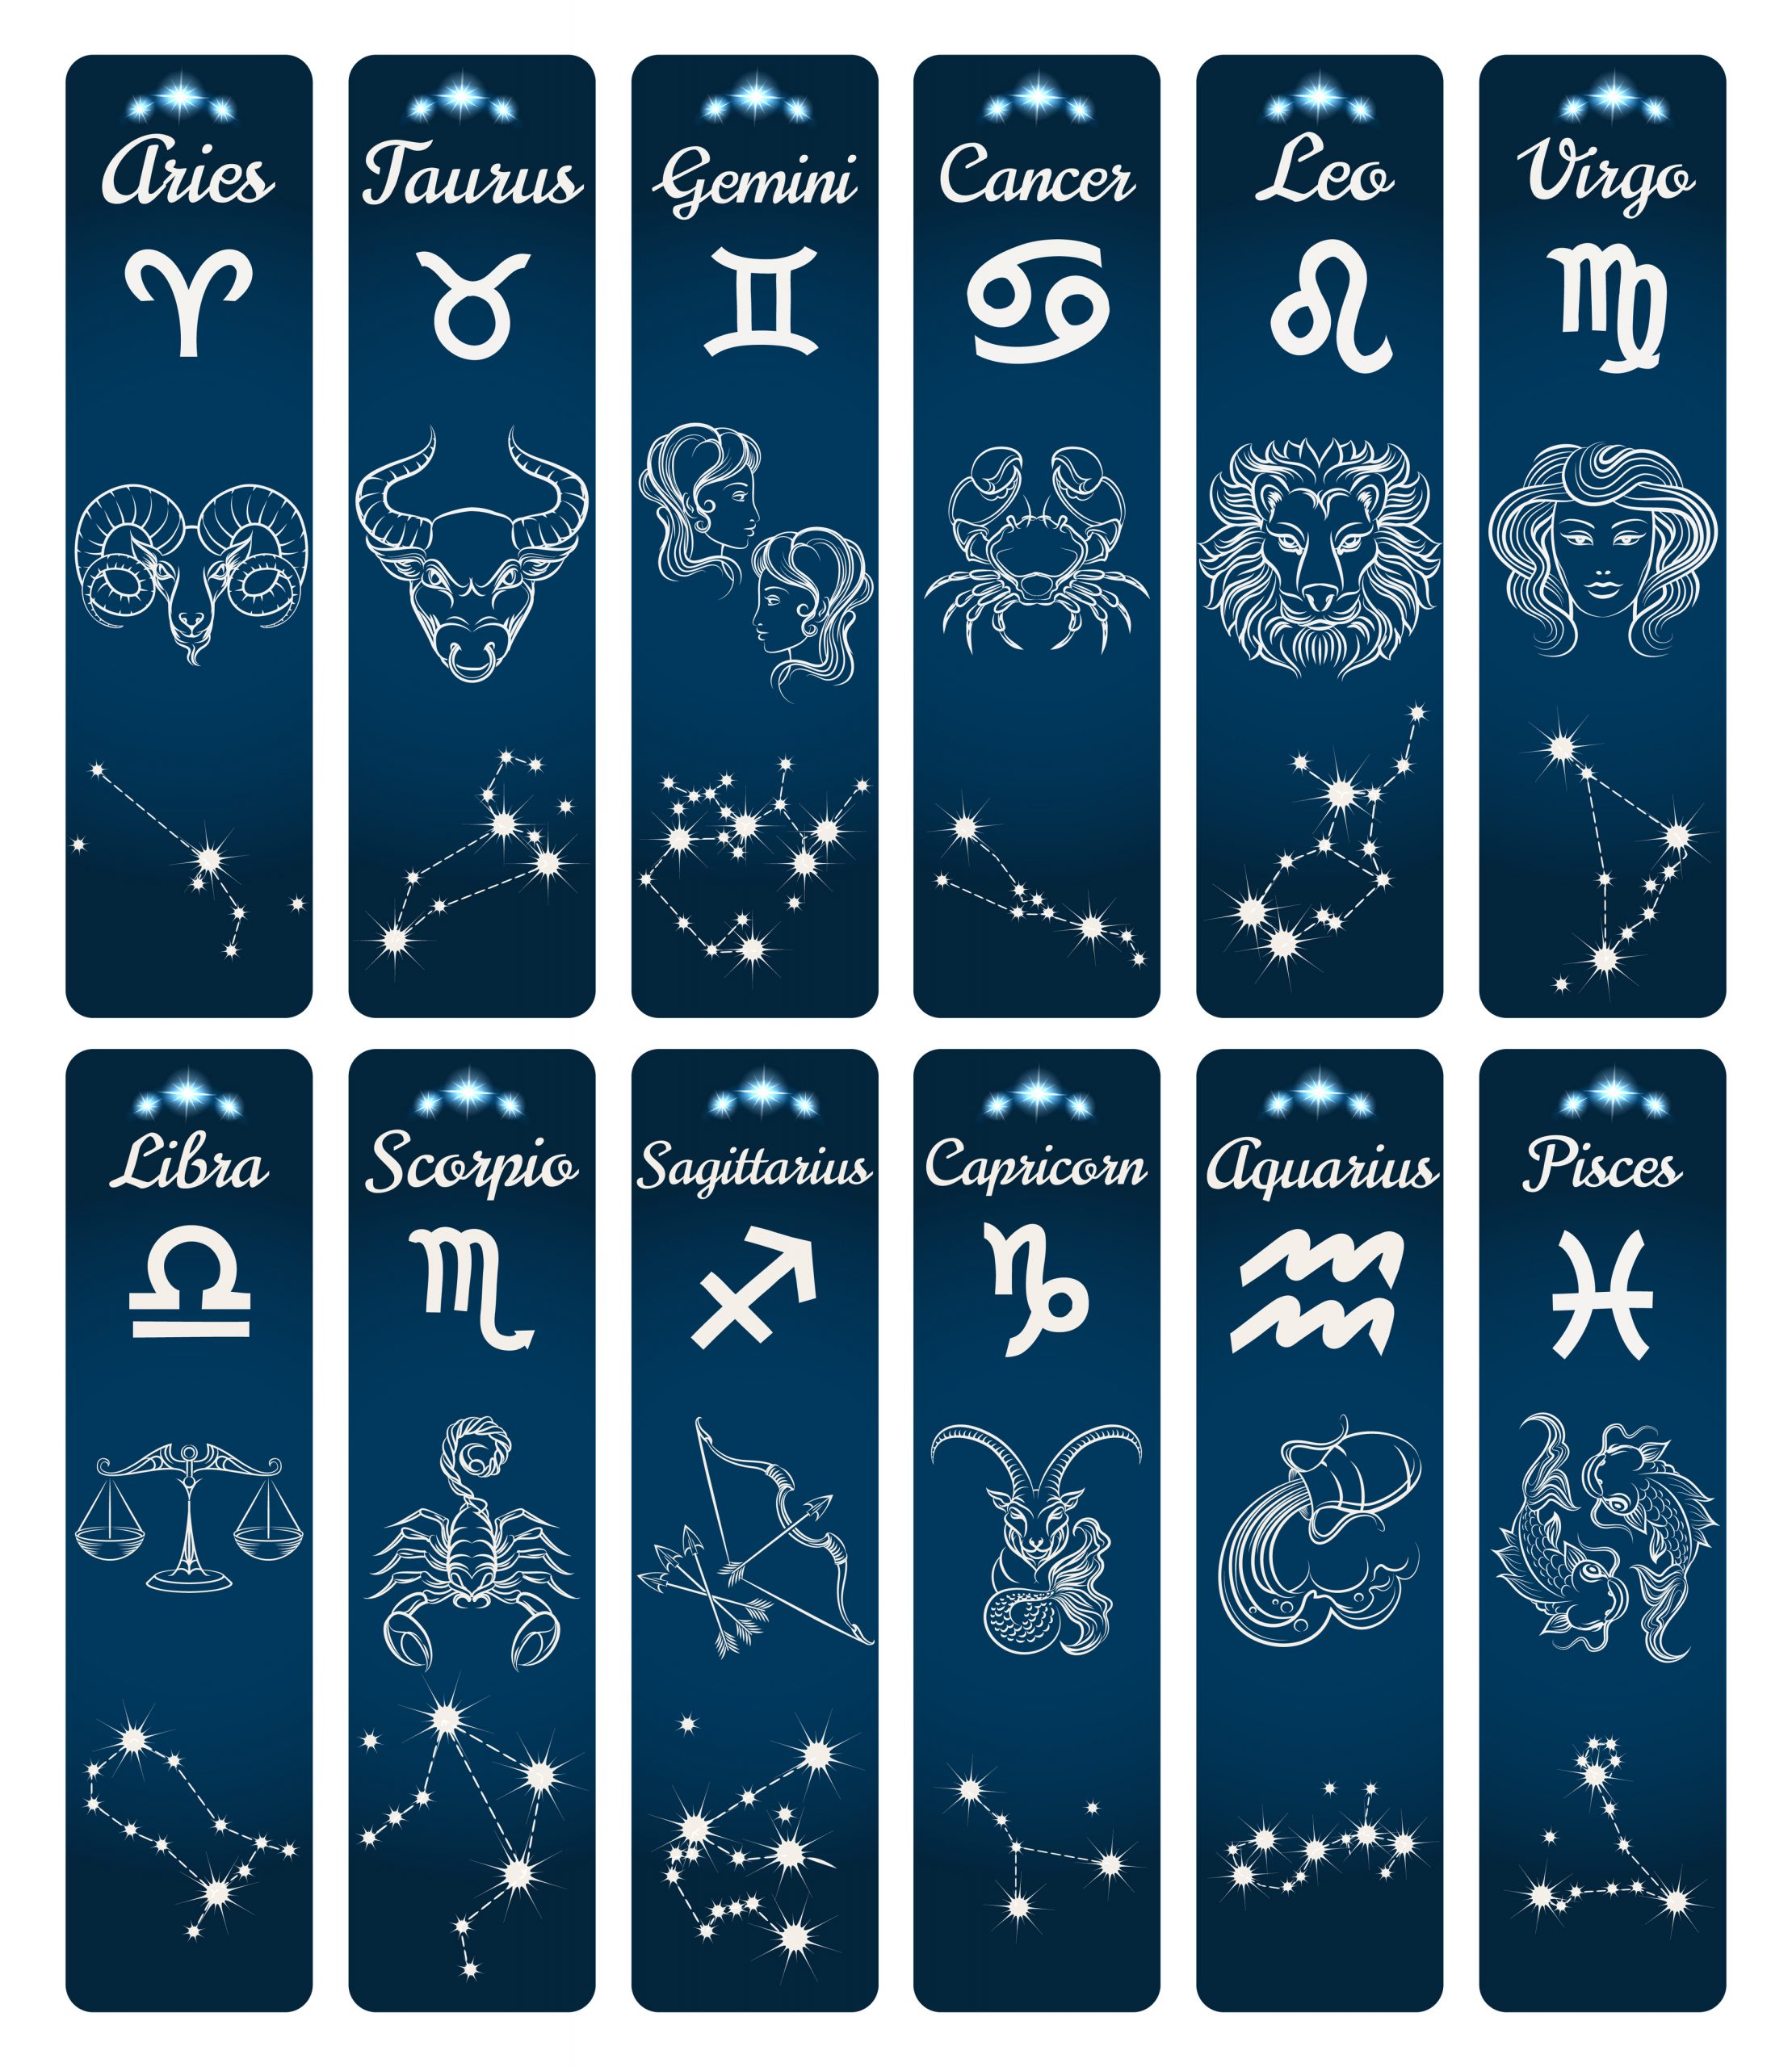 Horóscopos Julio 2022 - Signos del Zodiaco